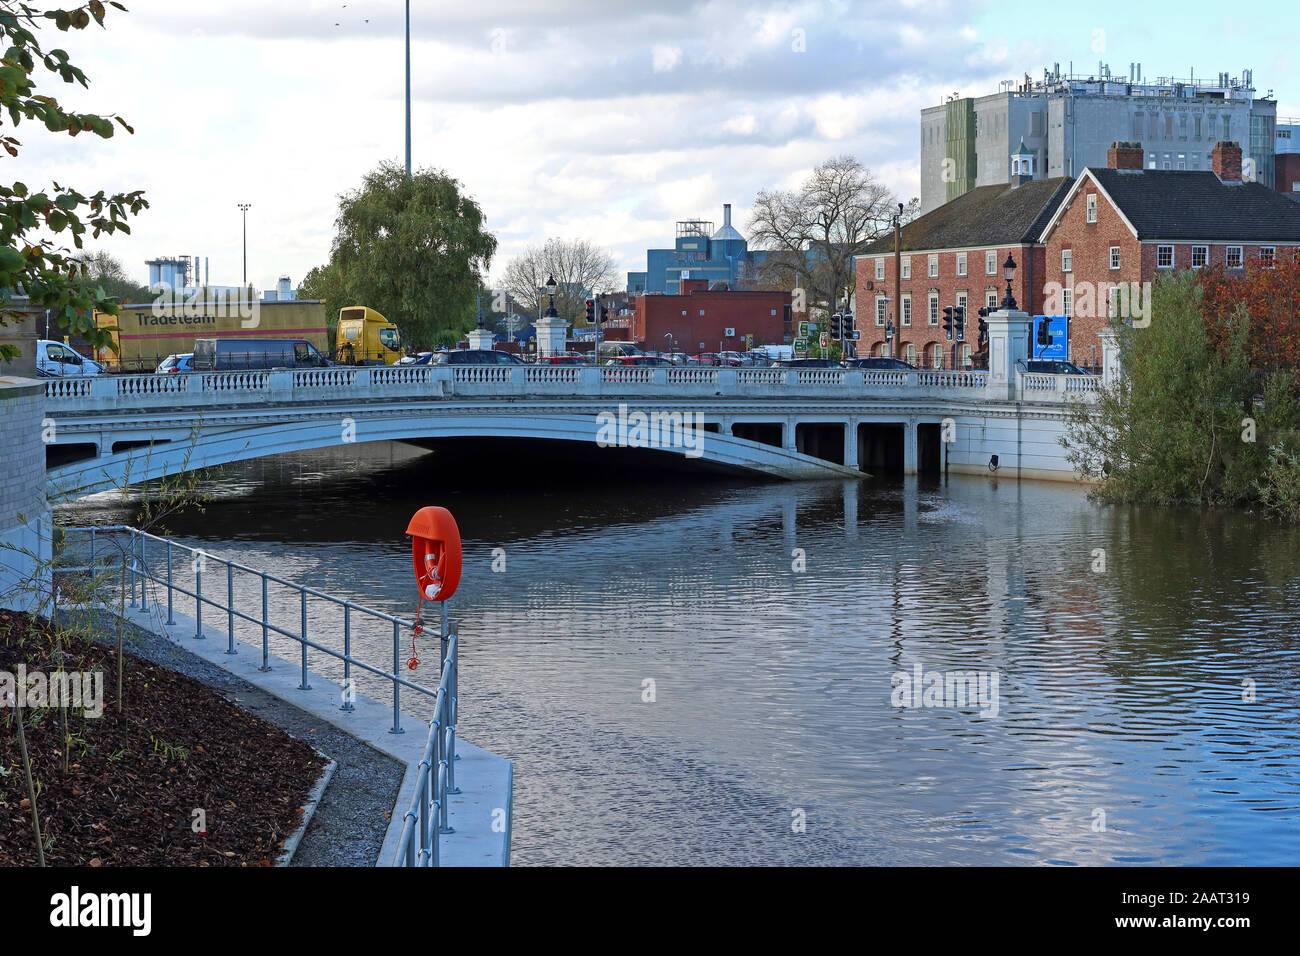 L'eau haute à Bridgefoot Warrington Oct 2019, WA1 1WA - Marée haute et l'inondation de la rivière Mersey Crossing, North West Cheshire, England, UK Banque D'Images